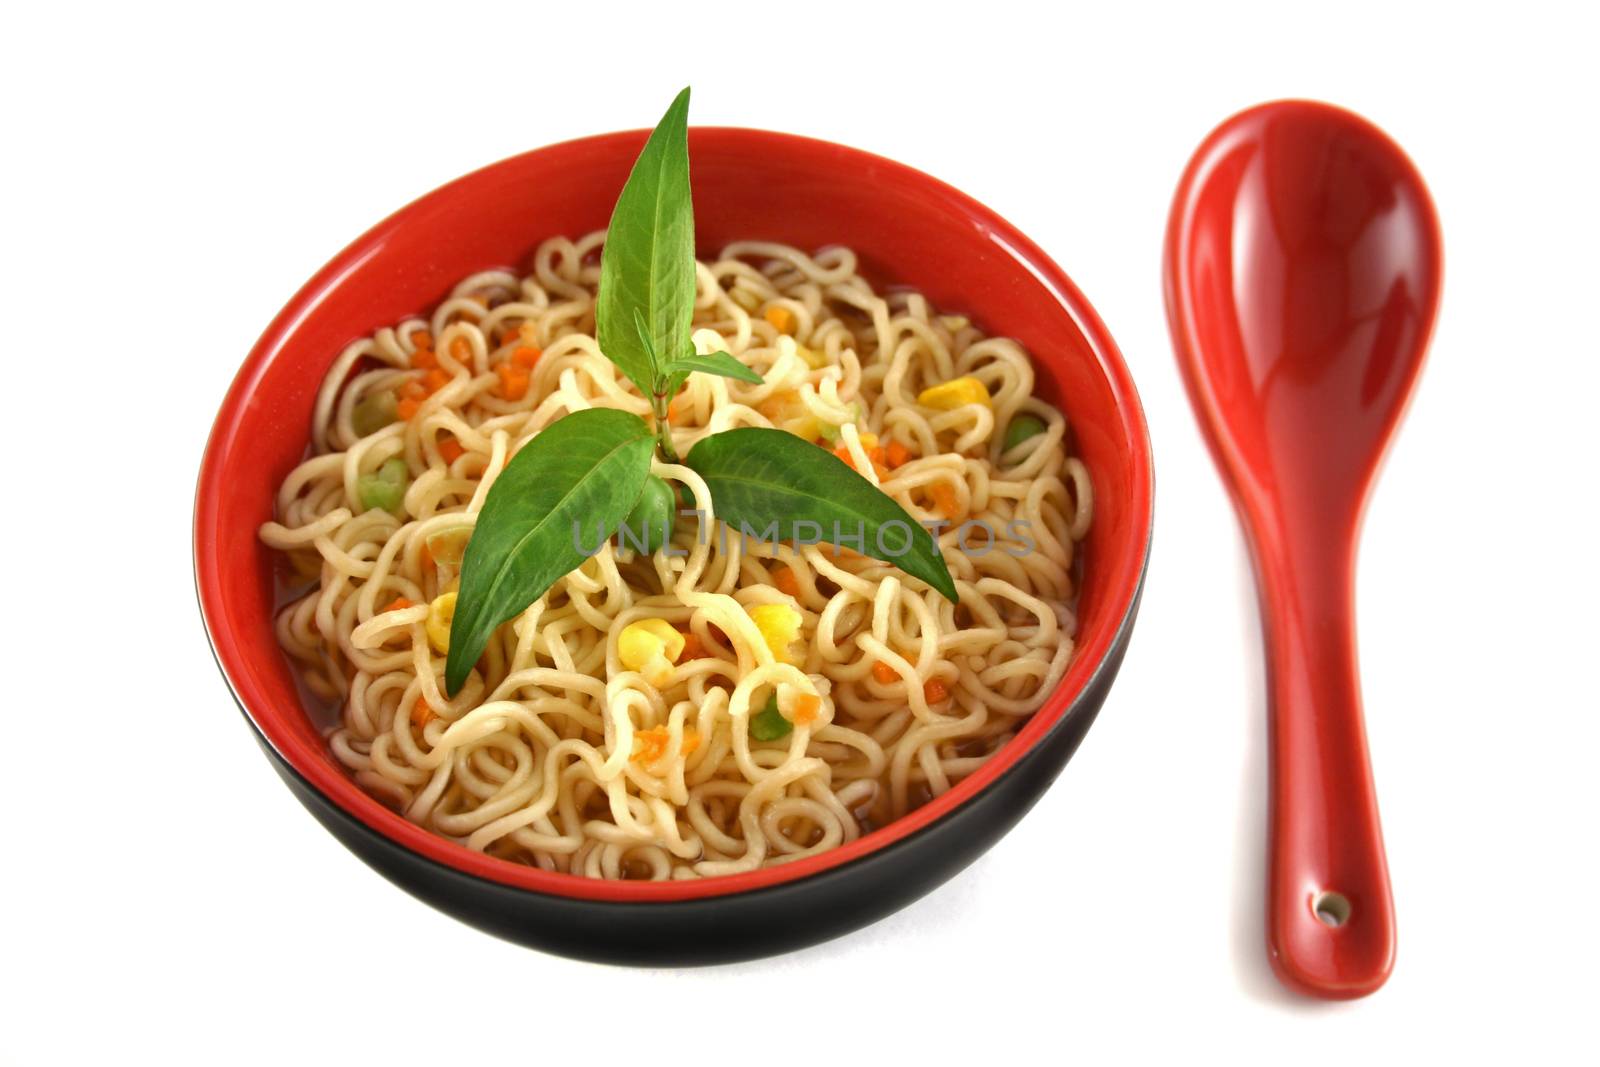 Singapore noodle soup with Vietnamese mint.